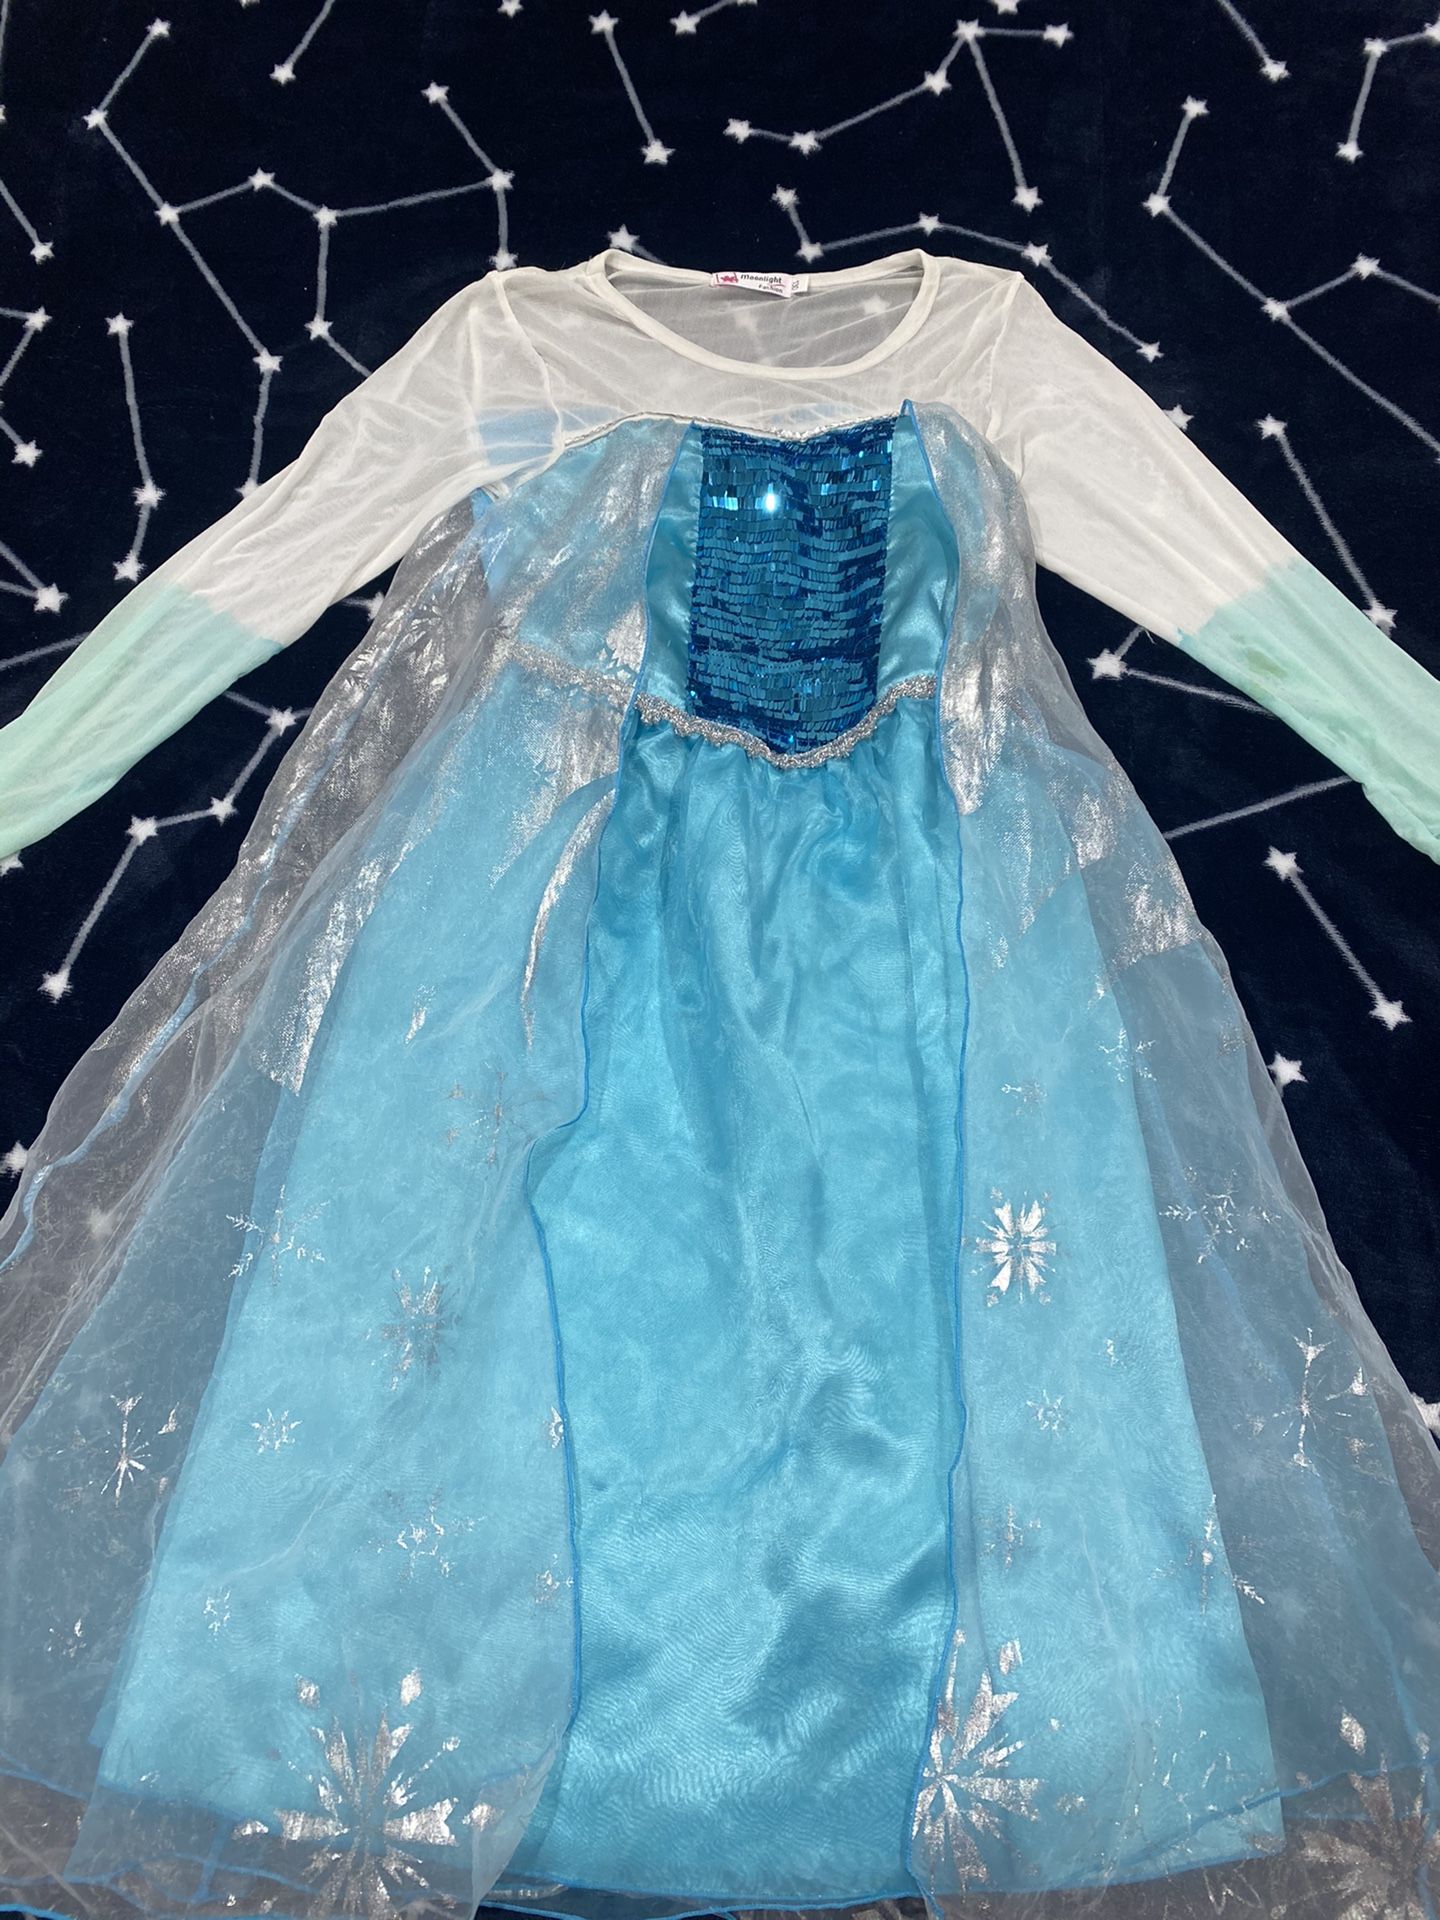 Elsa dress/costume